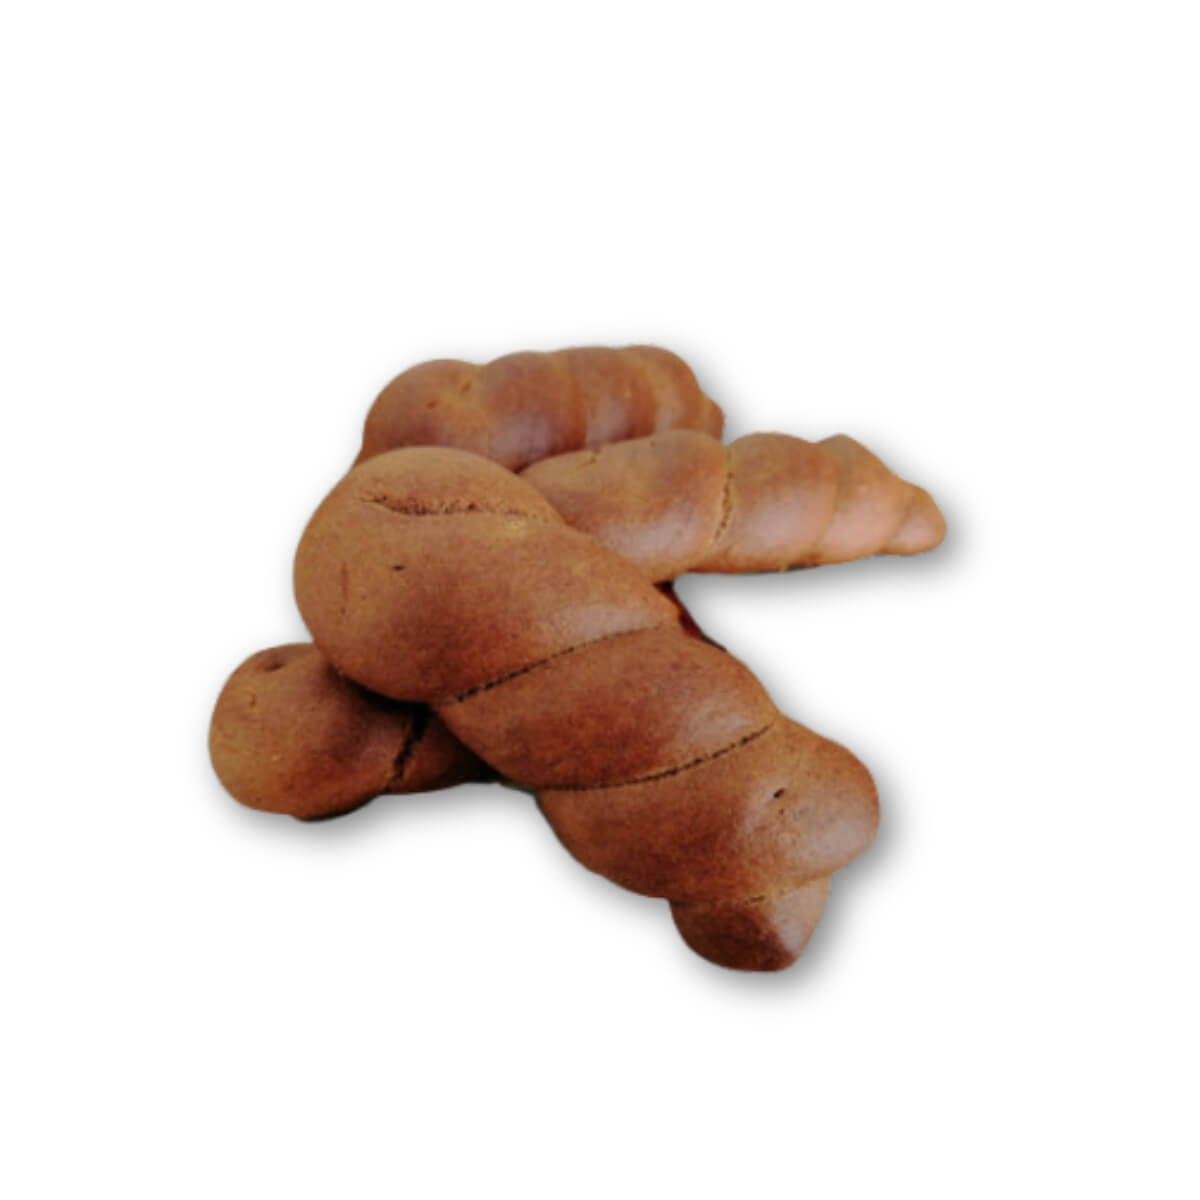 Biscotti kotsida moustokouloura (senza zucchero) - 500g